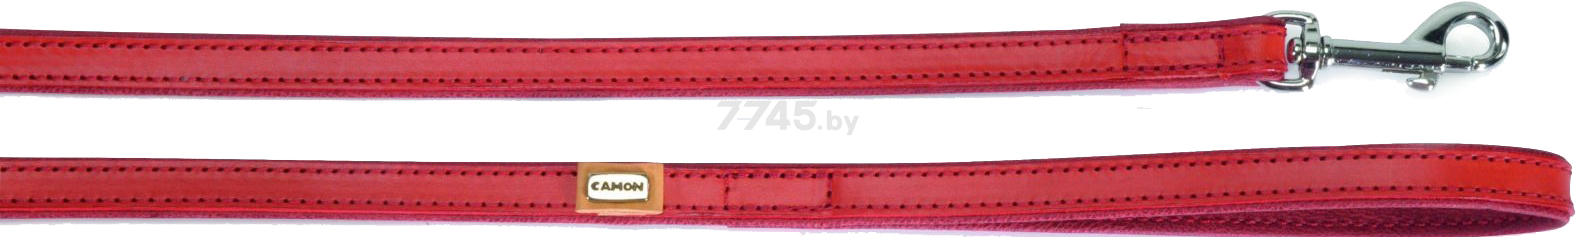 Поводок для собак CAMON Кожаный с синтетической подкладкой 20 мм 1 м красный (DA096/F)